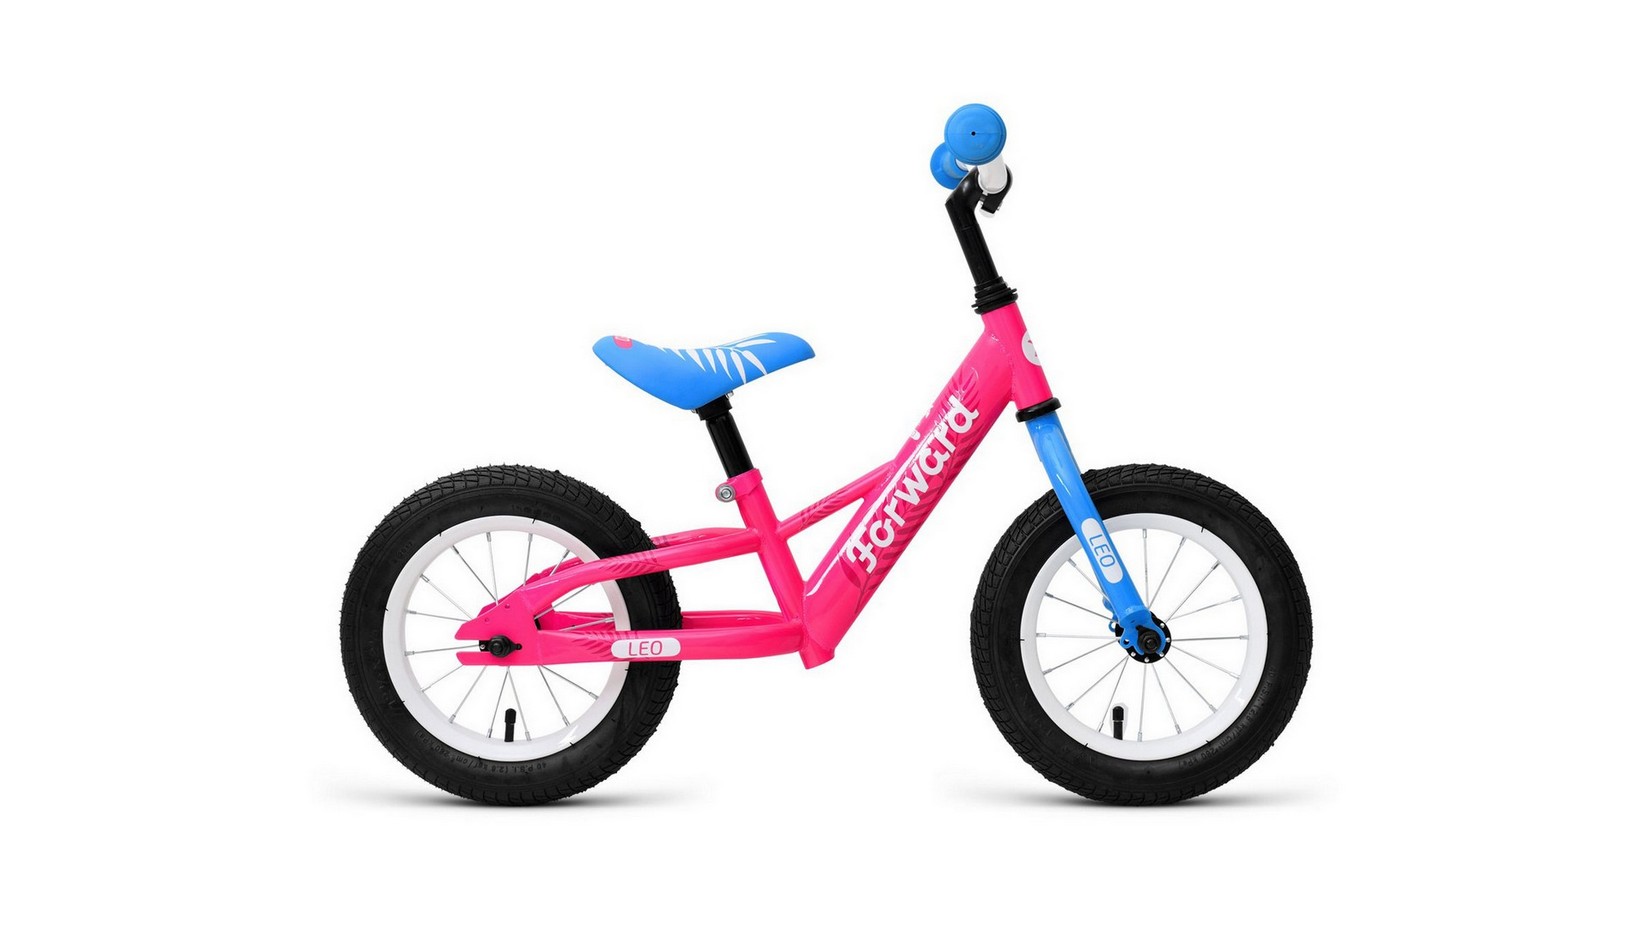 Беговел Forward LEO 2021 розовый 1BKW1R1A1002 экстремальный велосипед haro inspired год 2021 розовый ростовка 20 5